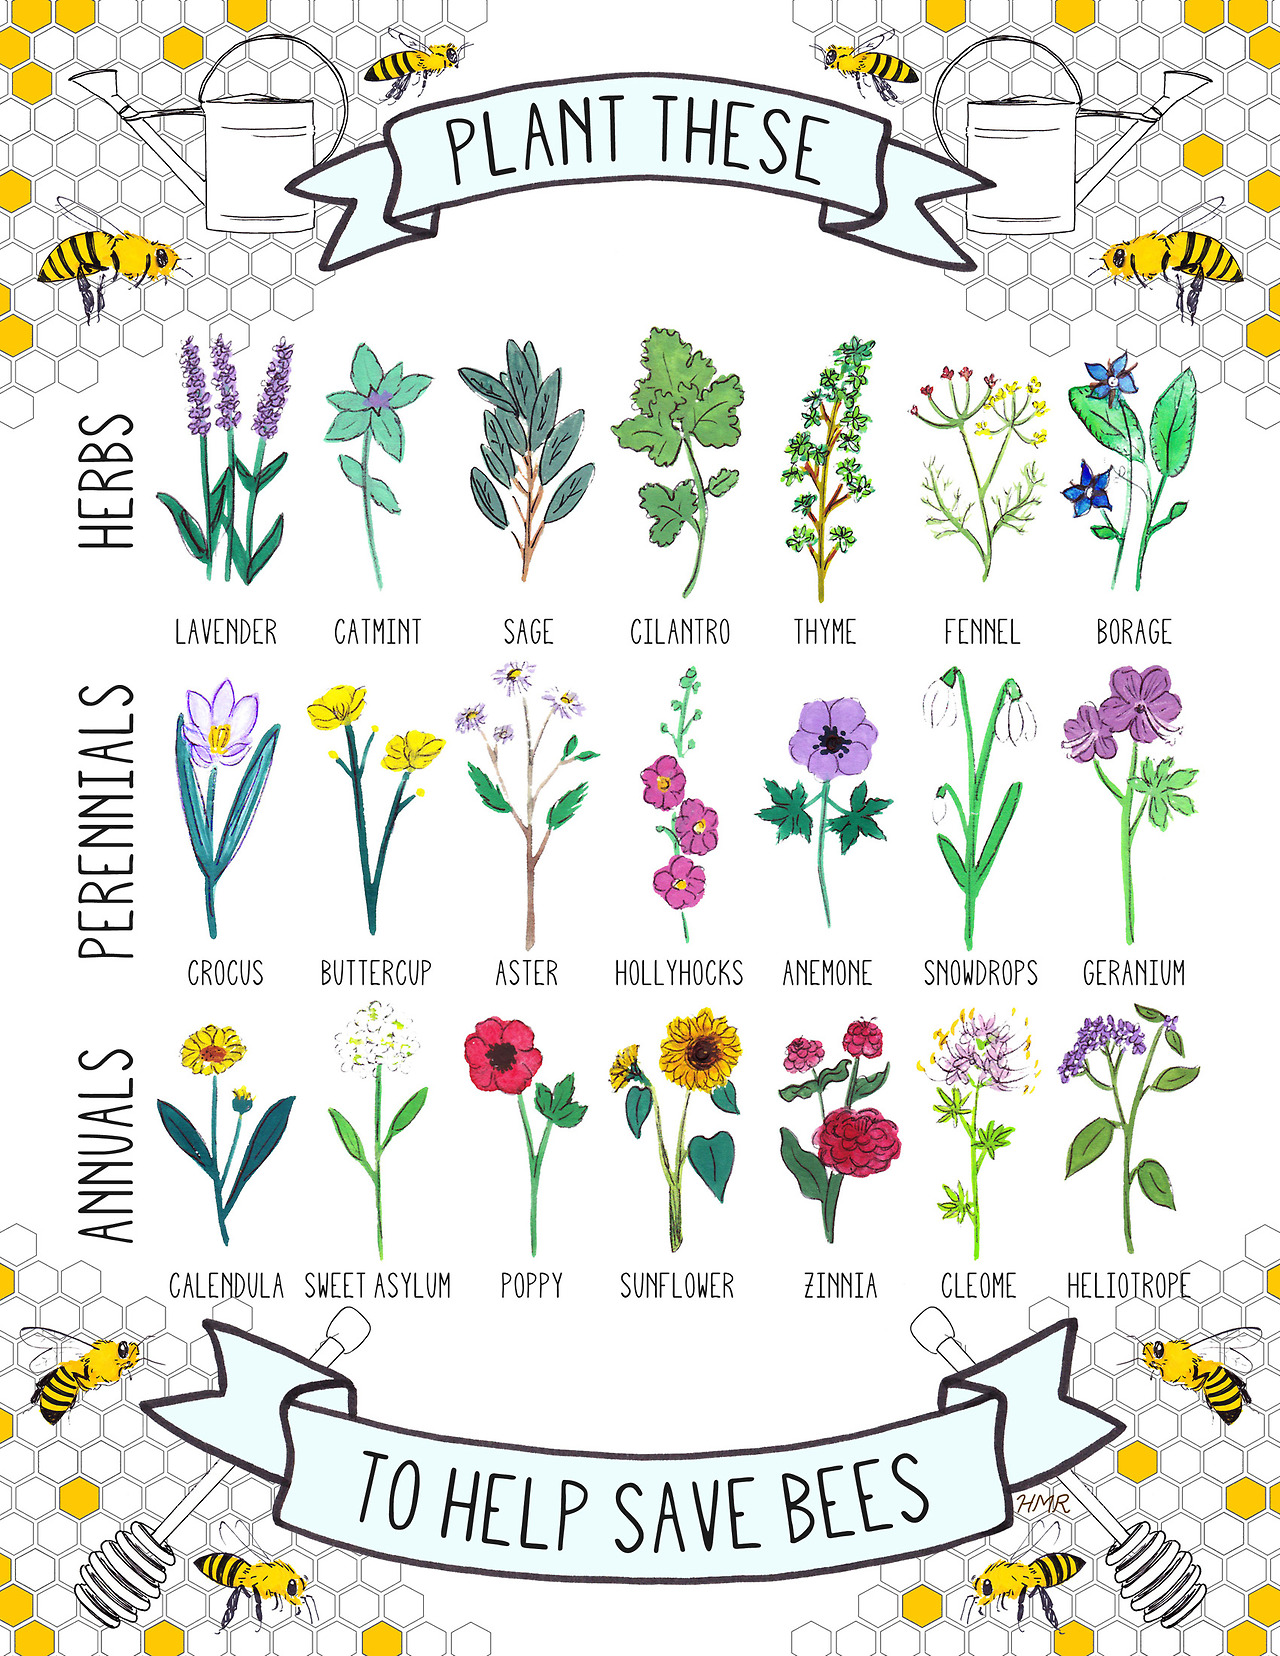 Ayudemos a las abejas sembrando las siguientes plantas en nuestro jardín